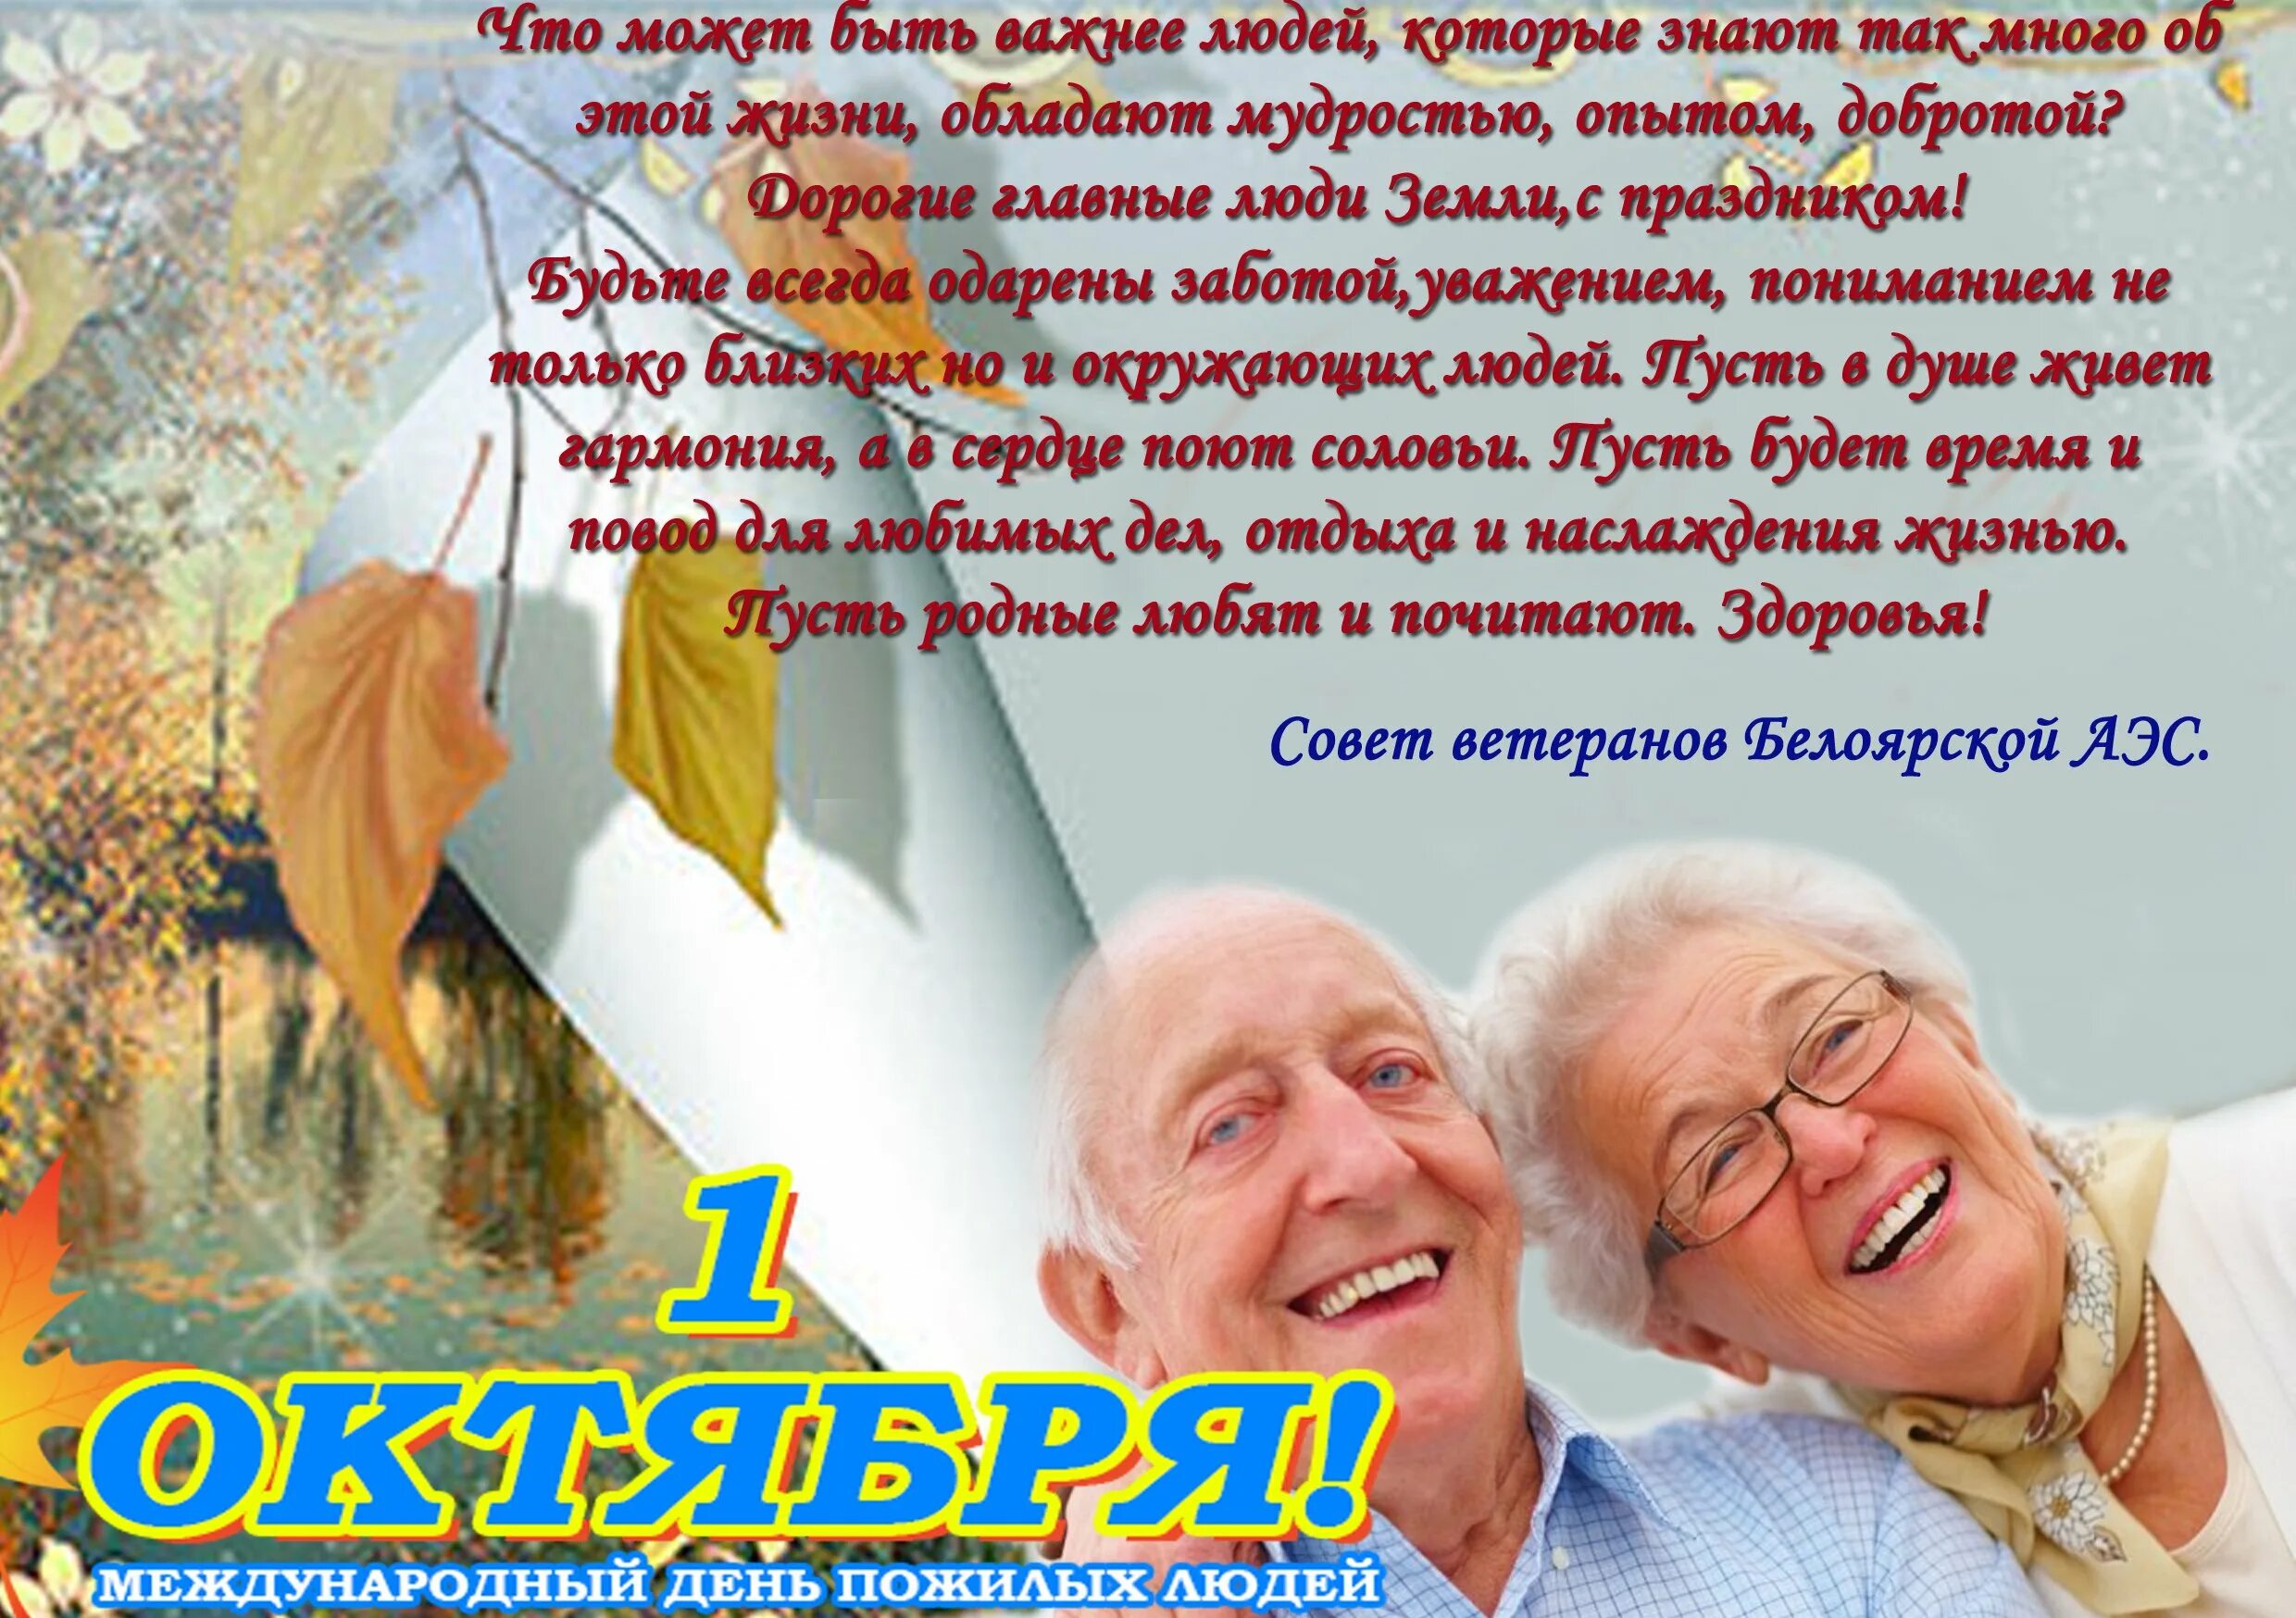 Поздравление для пожилых людей. Поздравление с днем пожилого человека. Открытка ко Дню пожилого человека. Пожелания на день пожилых людей.